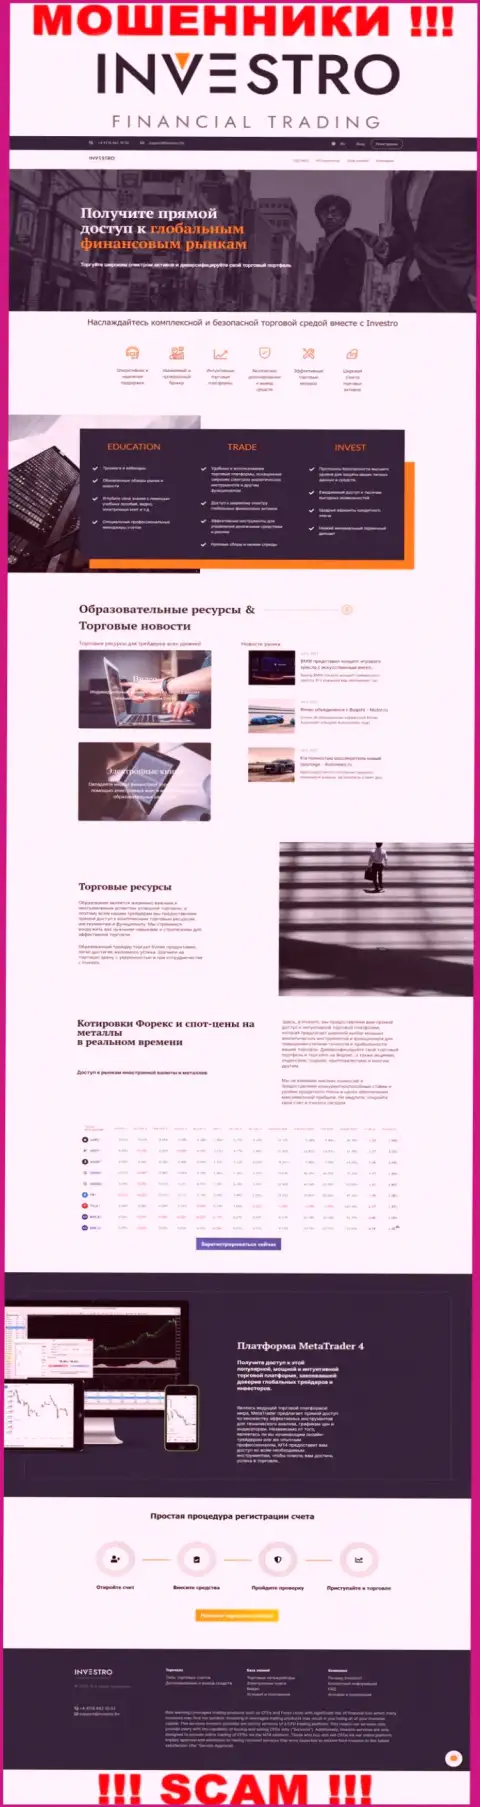 Скрин официального веб-сервиса Инвестро - Investro Fm